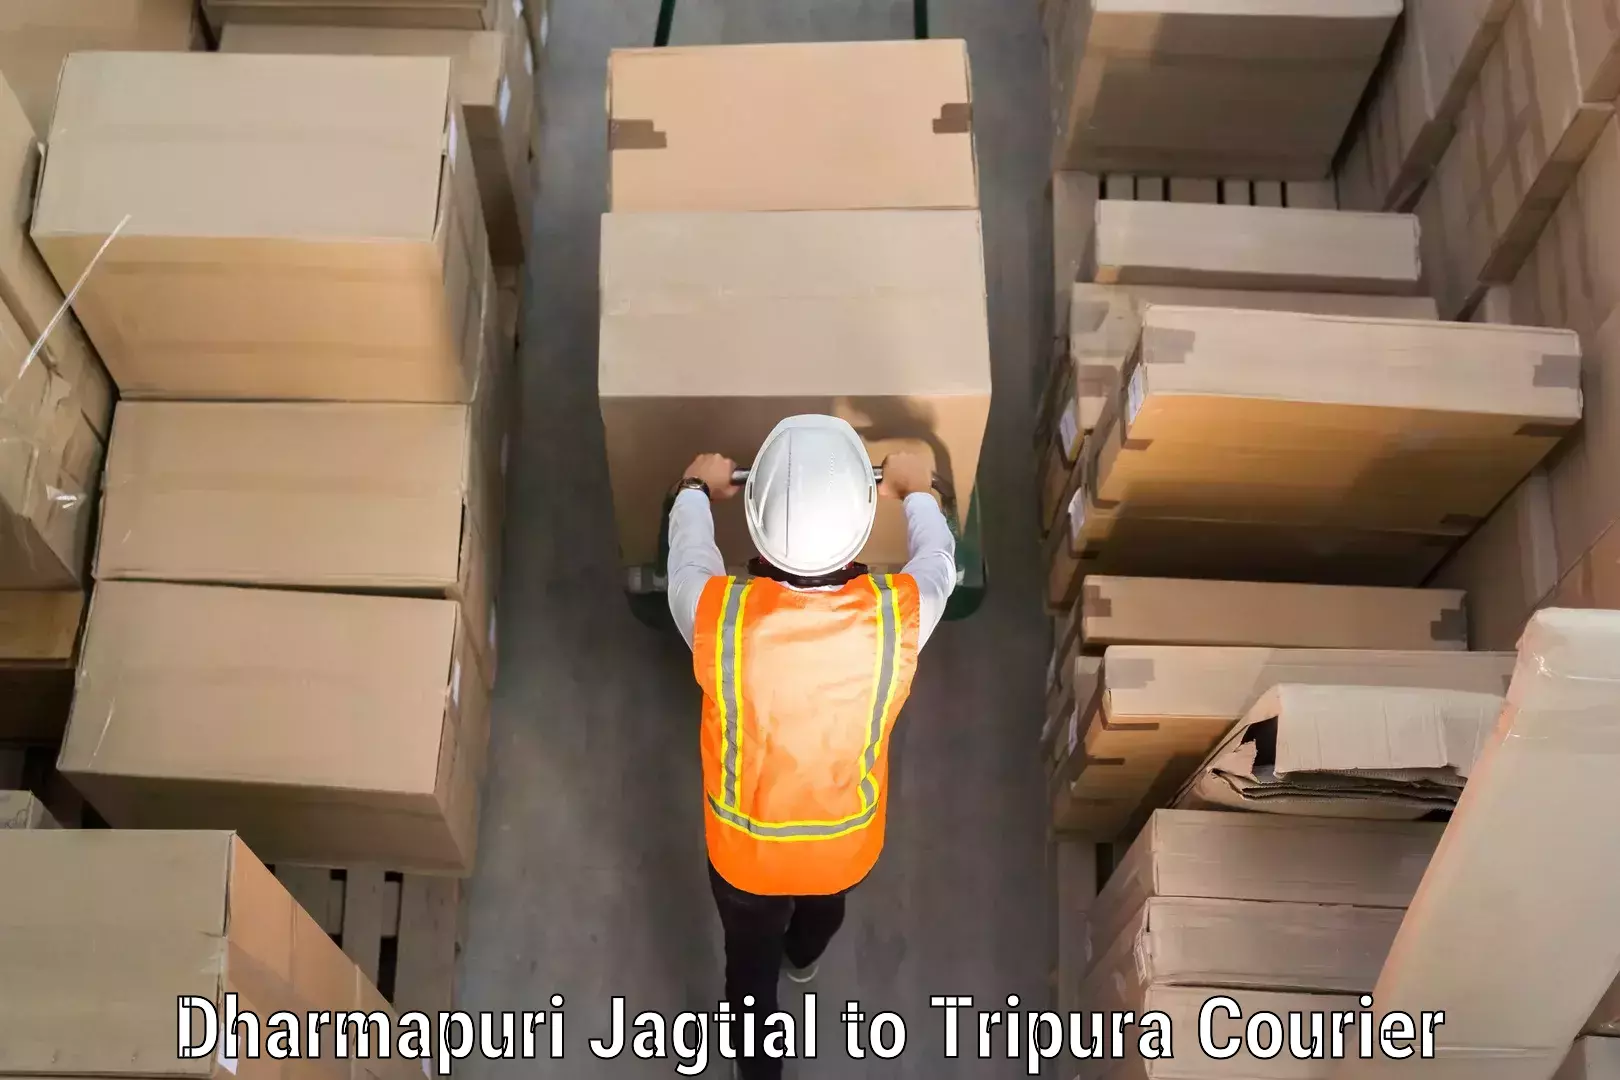 Baggage transport network in Dharmapuri Jagtial to Tripura